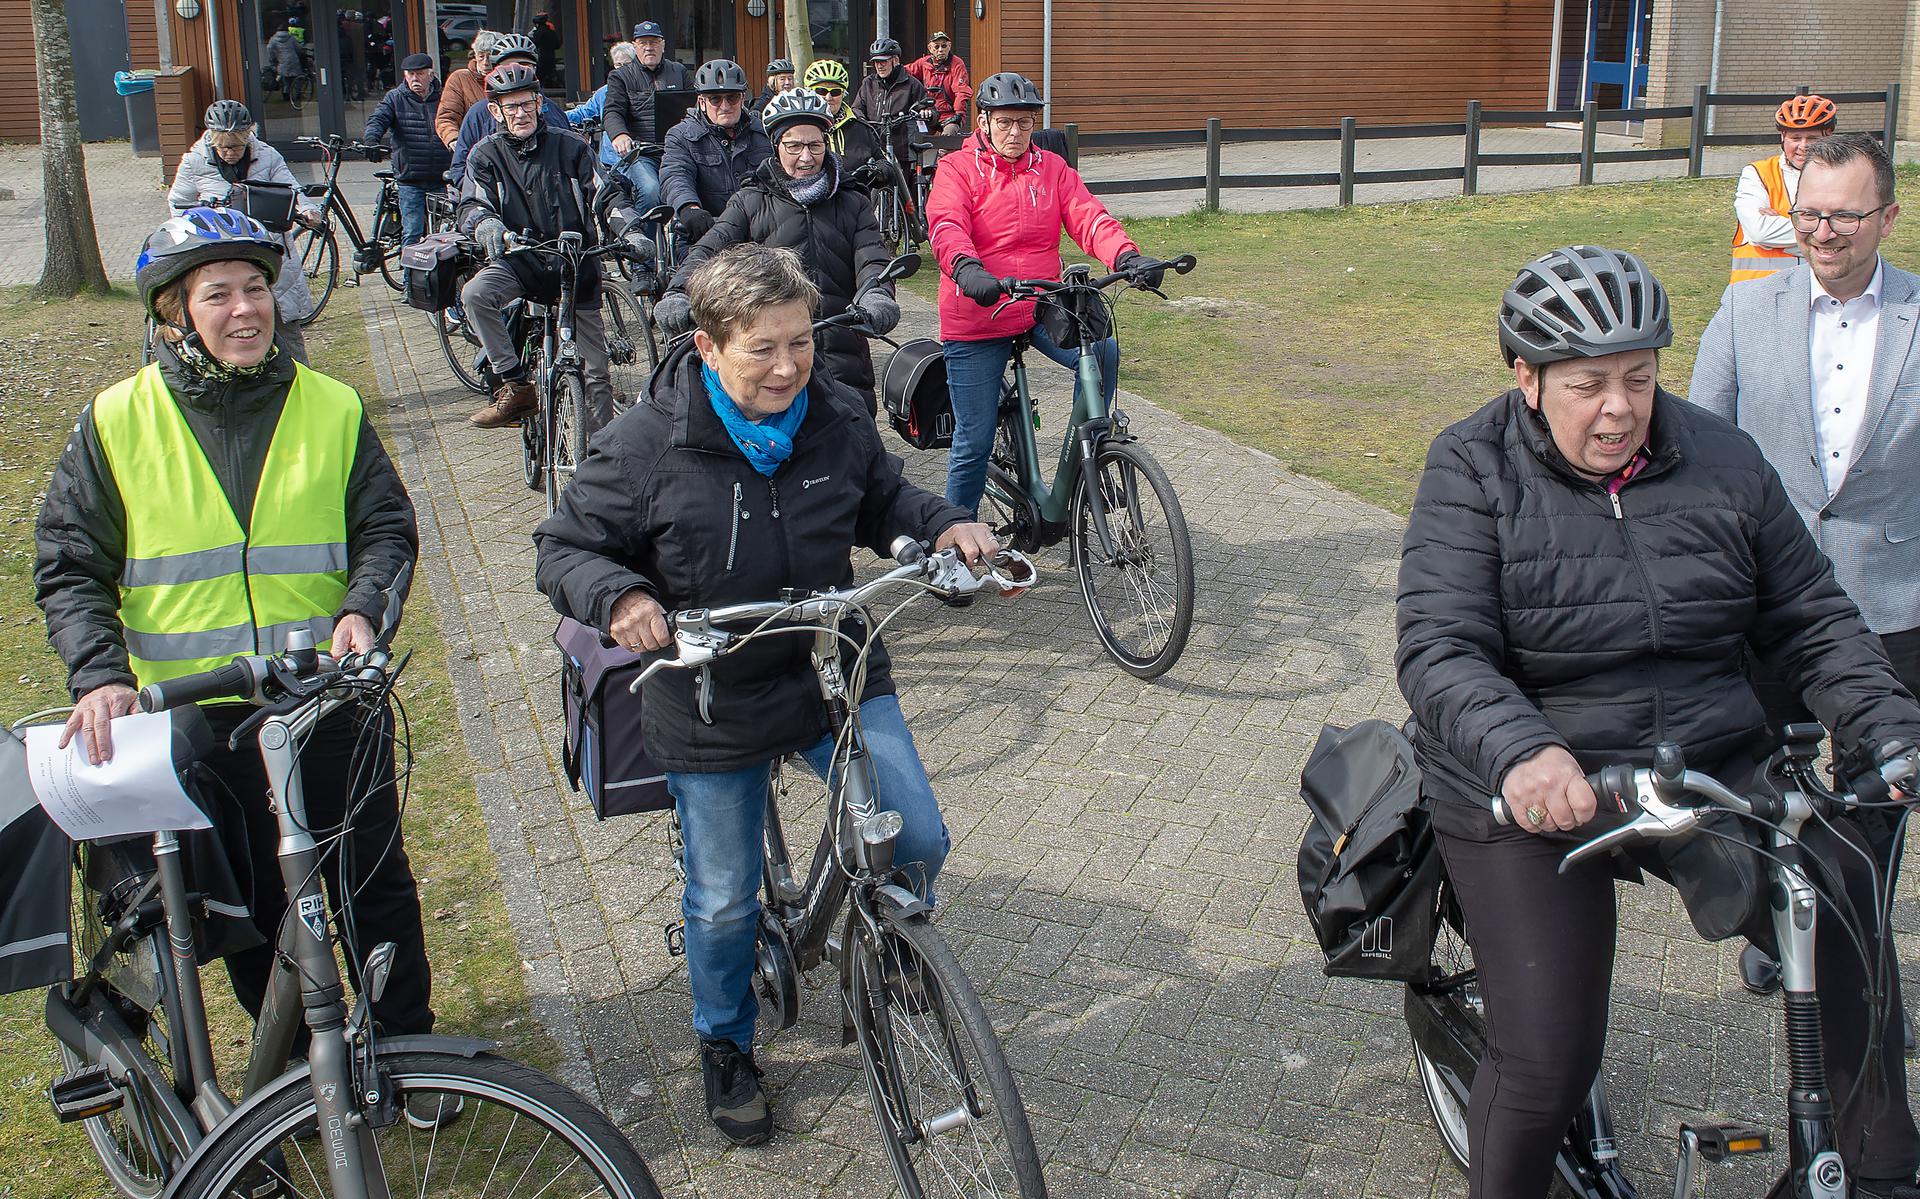 Na de workshop start in Exloo de eerste fietstocht van het Drents Doortrappenseizoen onder leiding van combicoach Petra (met veiligheidshestje)